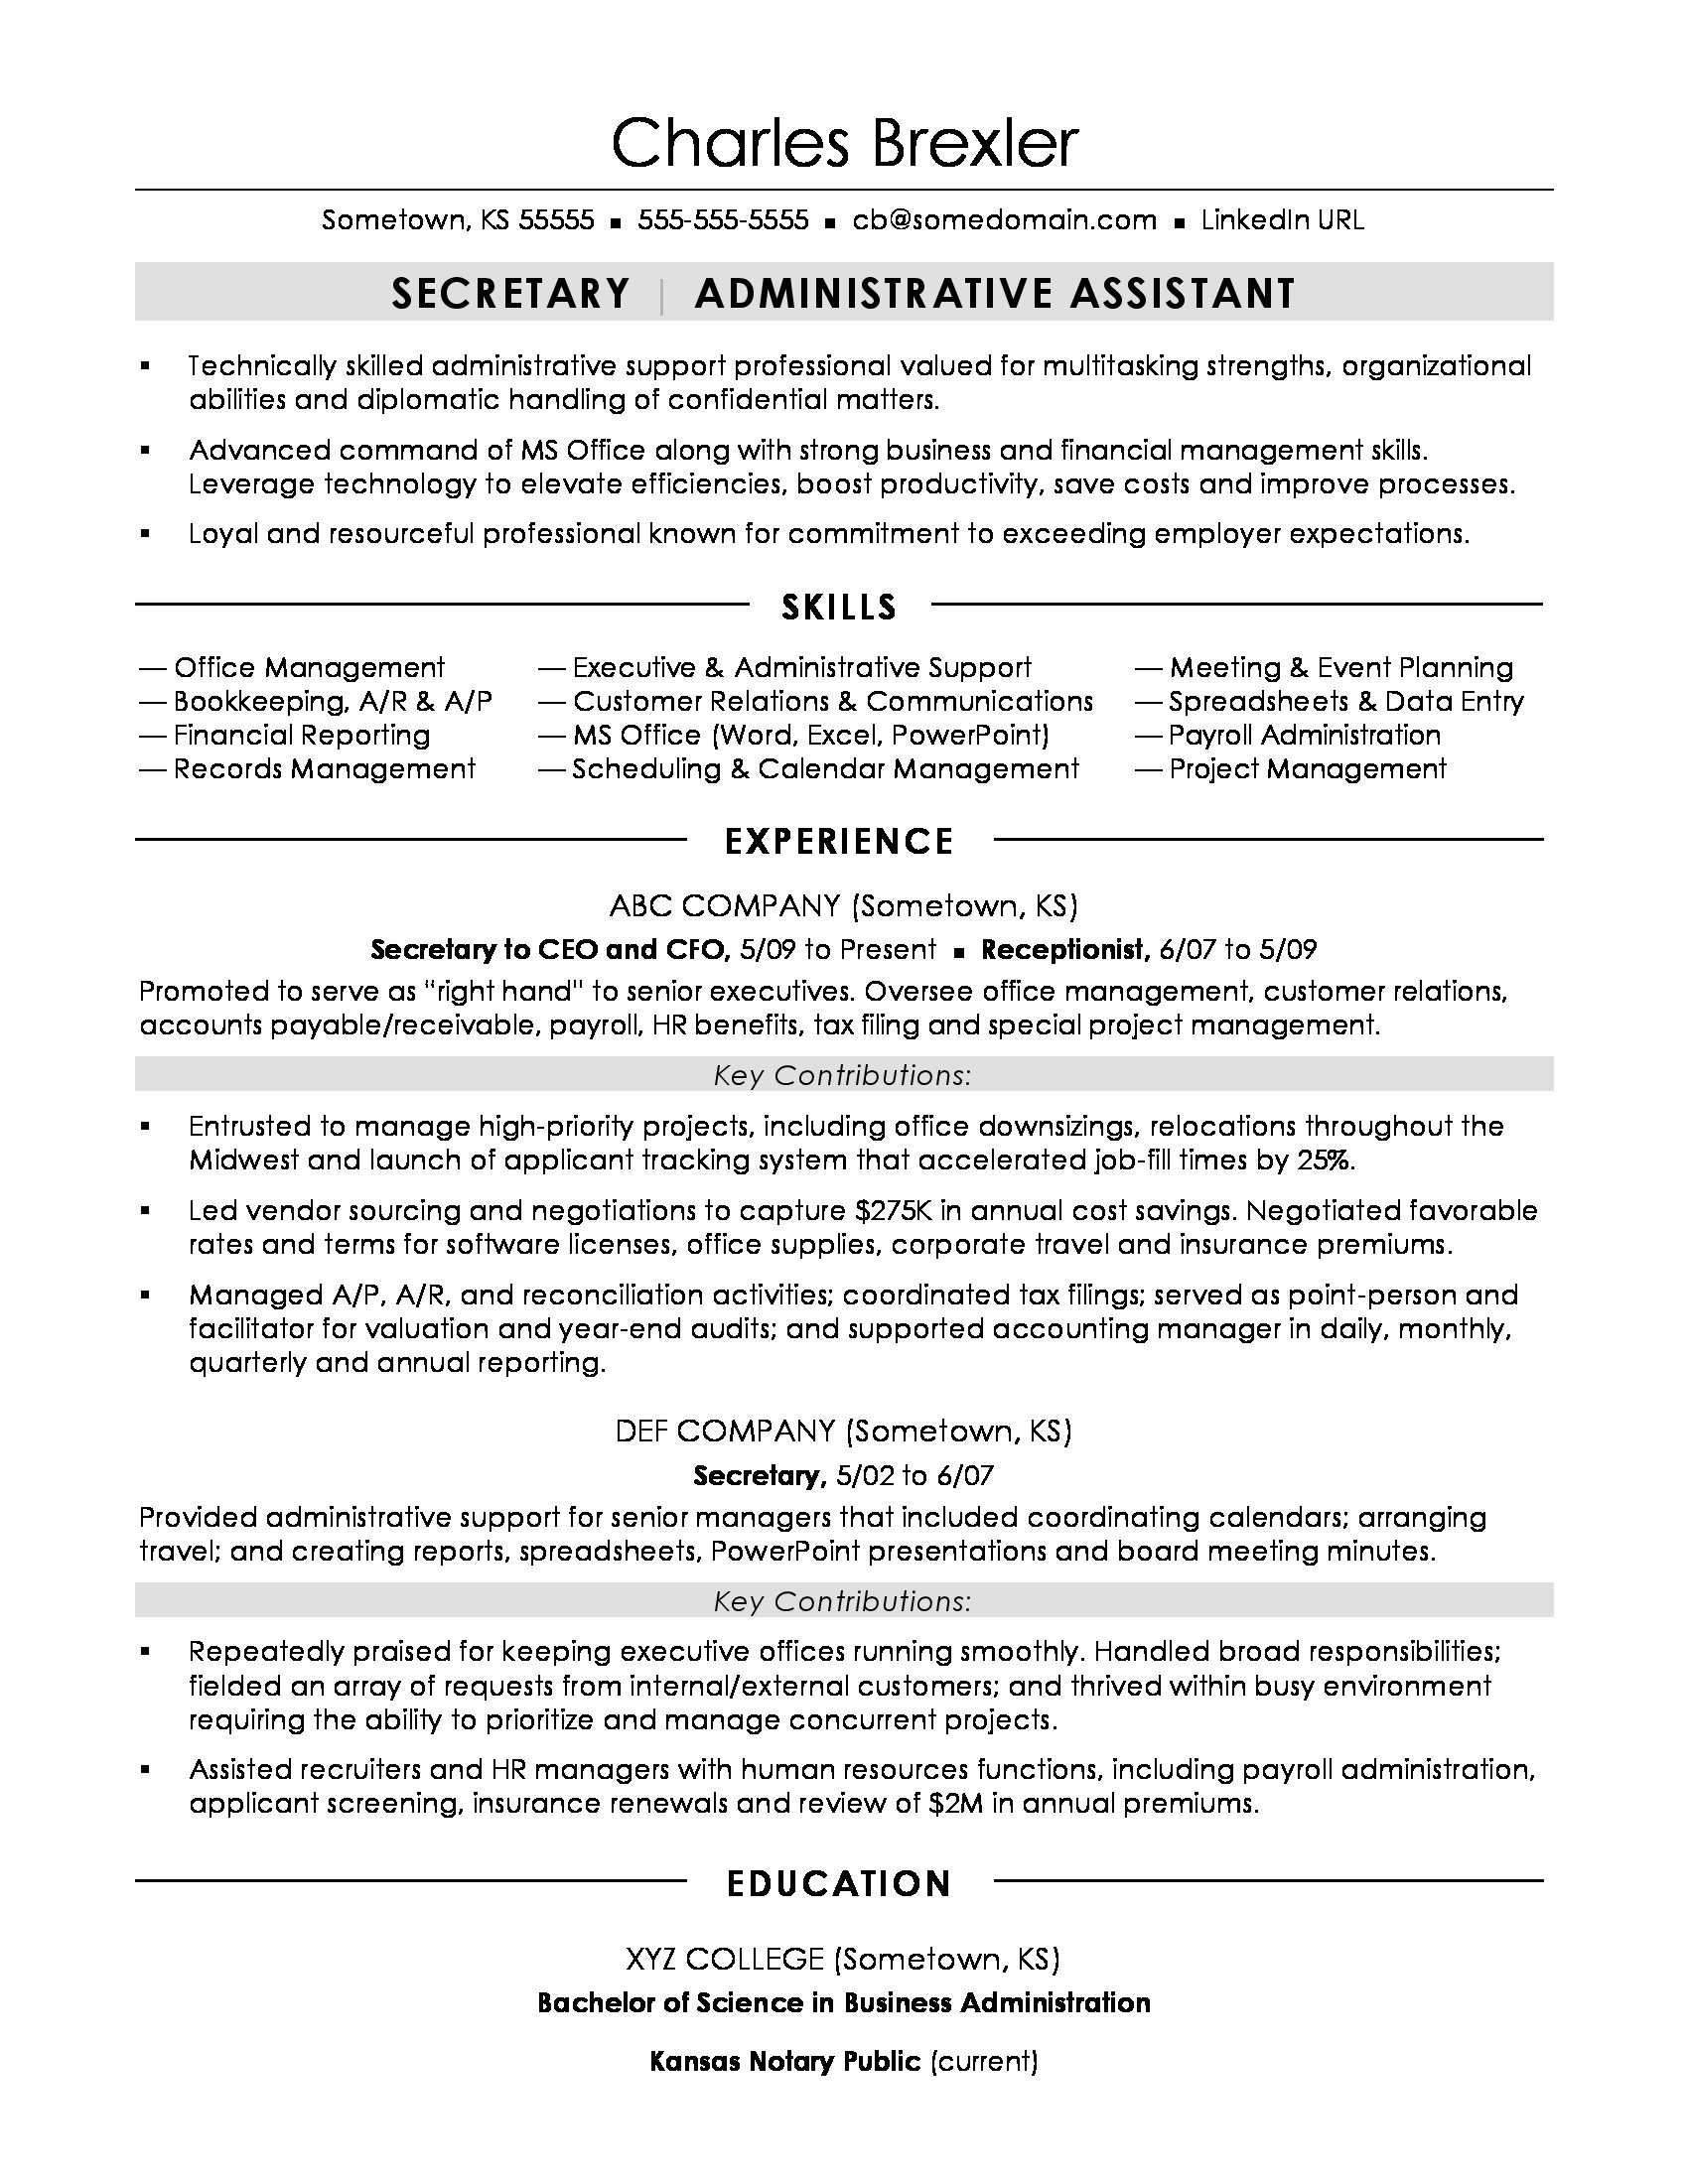 Sample Resume for Secretary In Law Firm Secretary Resume Sample Monster.com